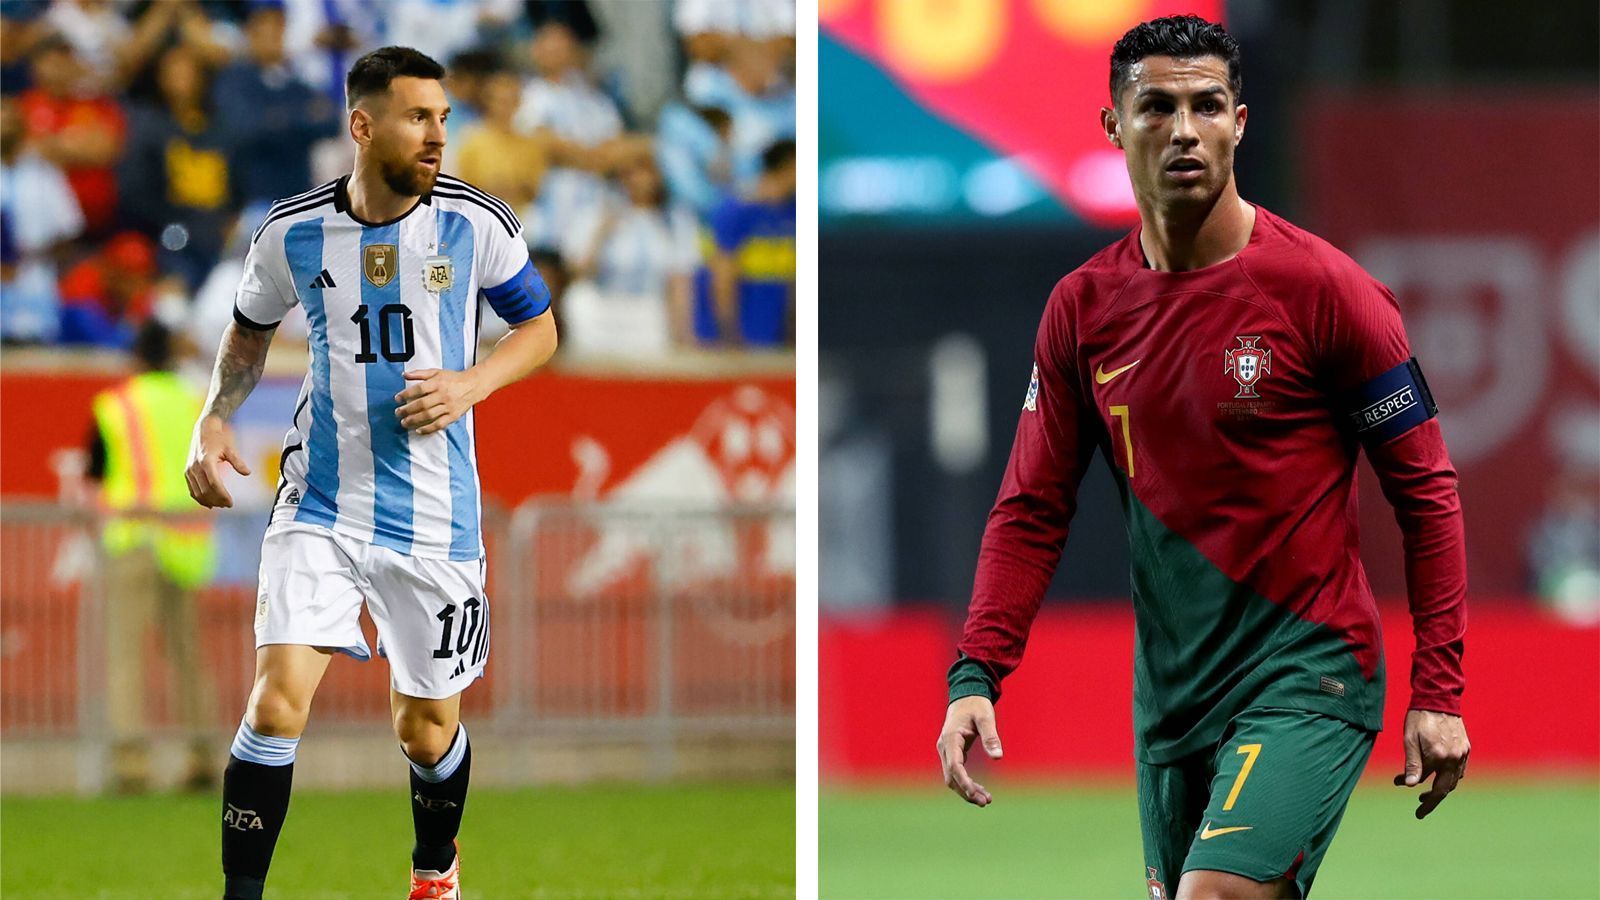 
                <strong>Spieler mit den meisten WM-Einsätzen</strong><br>
                &#x2022; Lionel Messi (Argentinien, links): 19 <br>&#x2022; Cristiano Ronaldo (Portugal, rechts): 17<br>
              